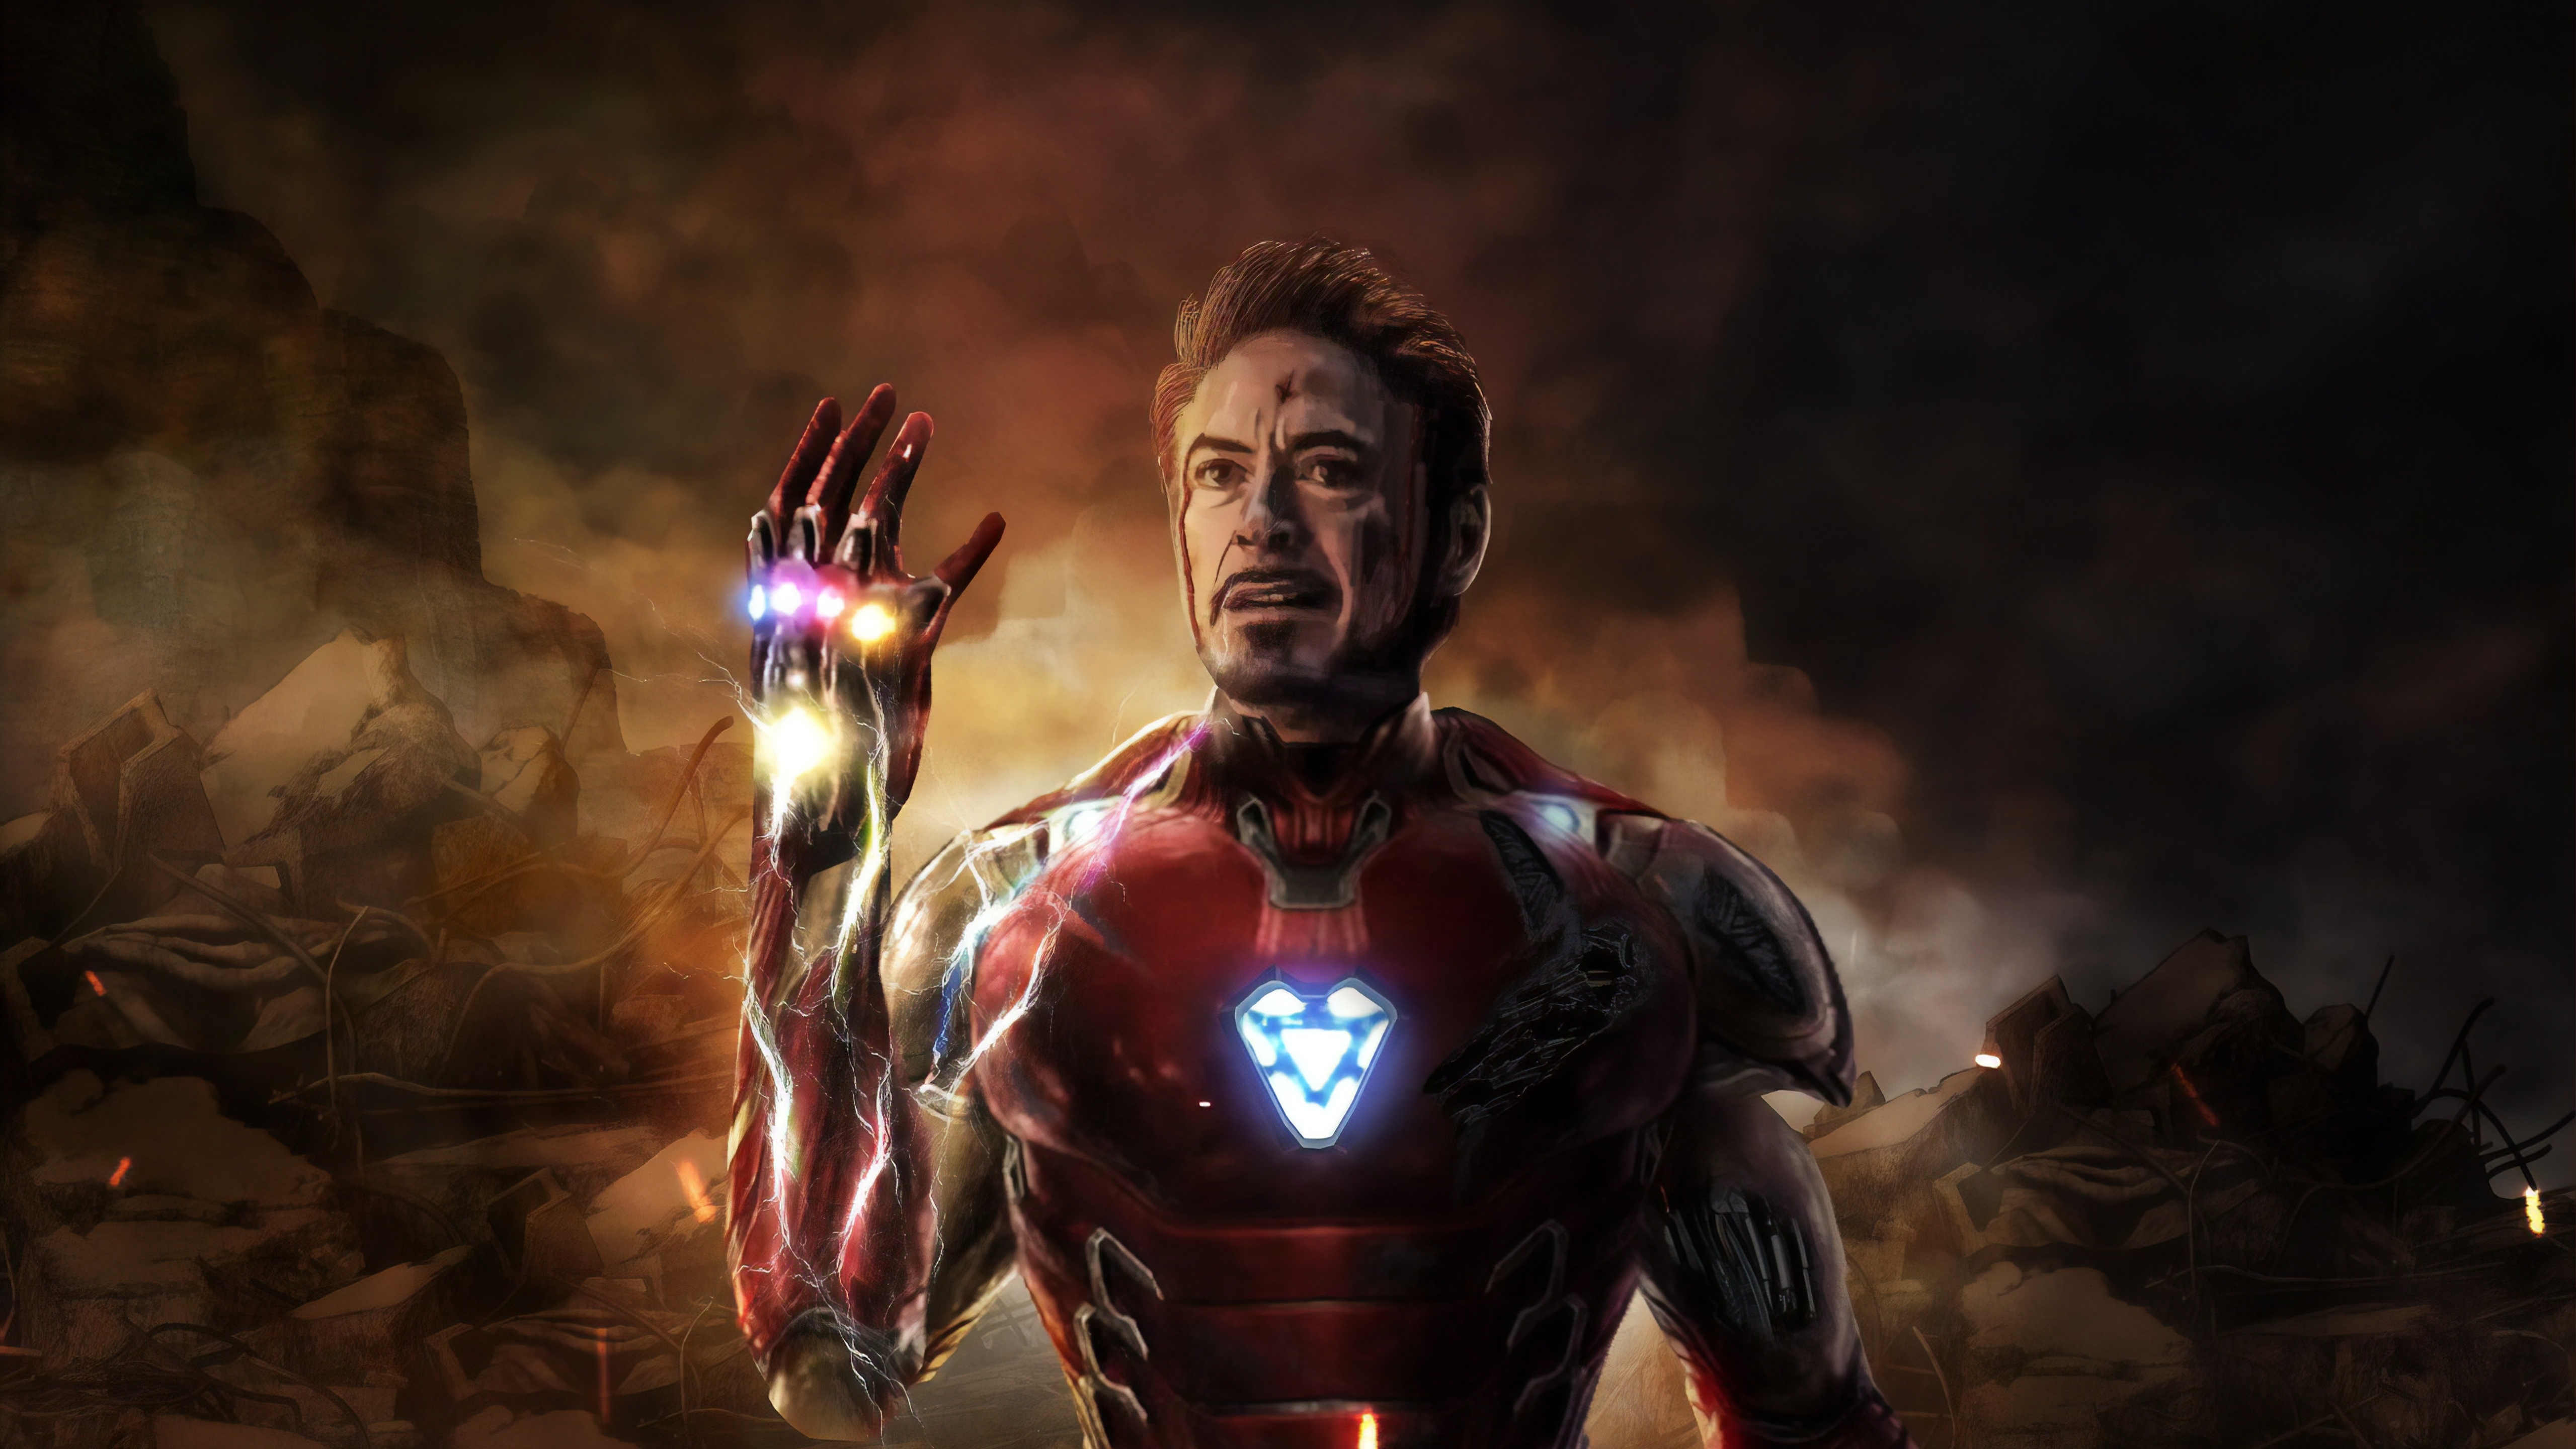 5120x2880 Iron Man Last Scene in Avengers Endgame 5K Wallpaper, HD